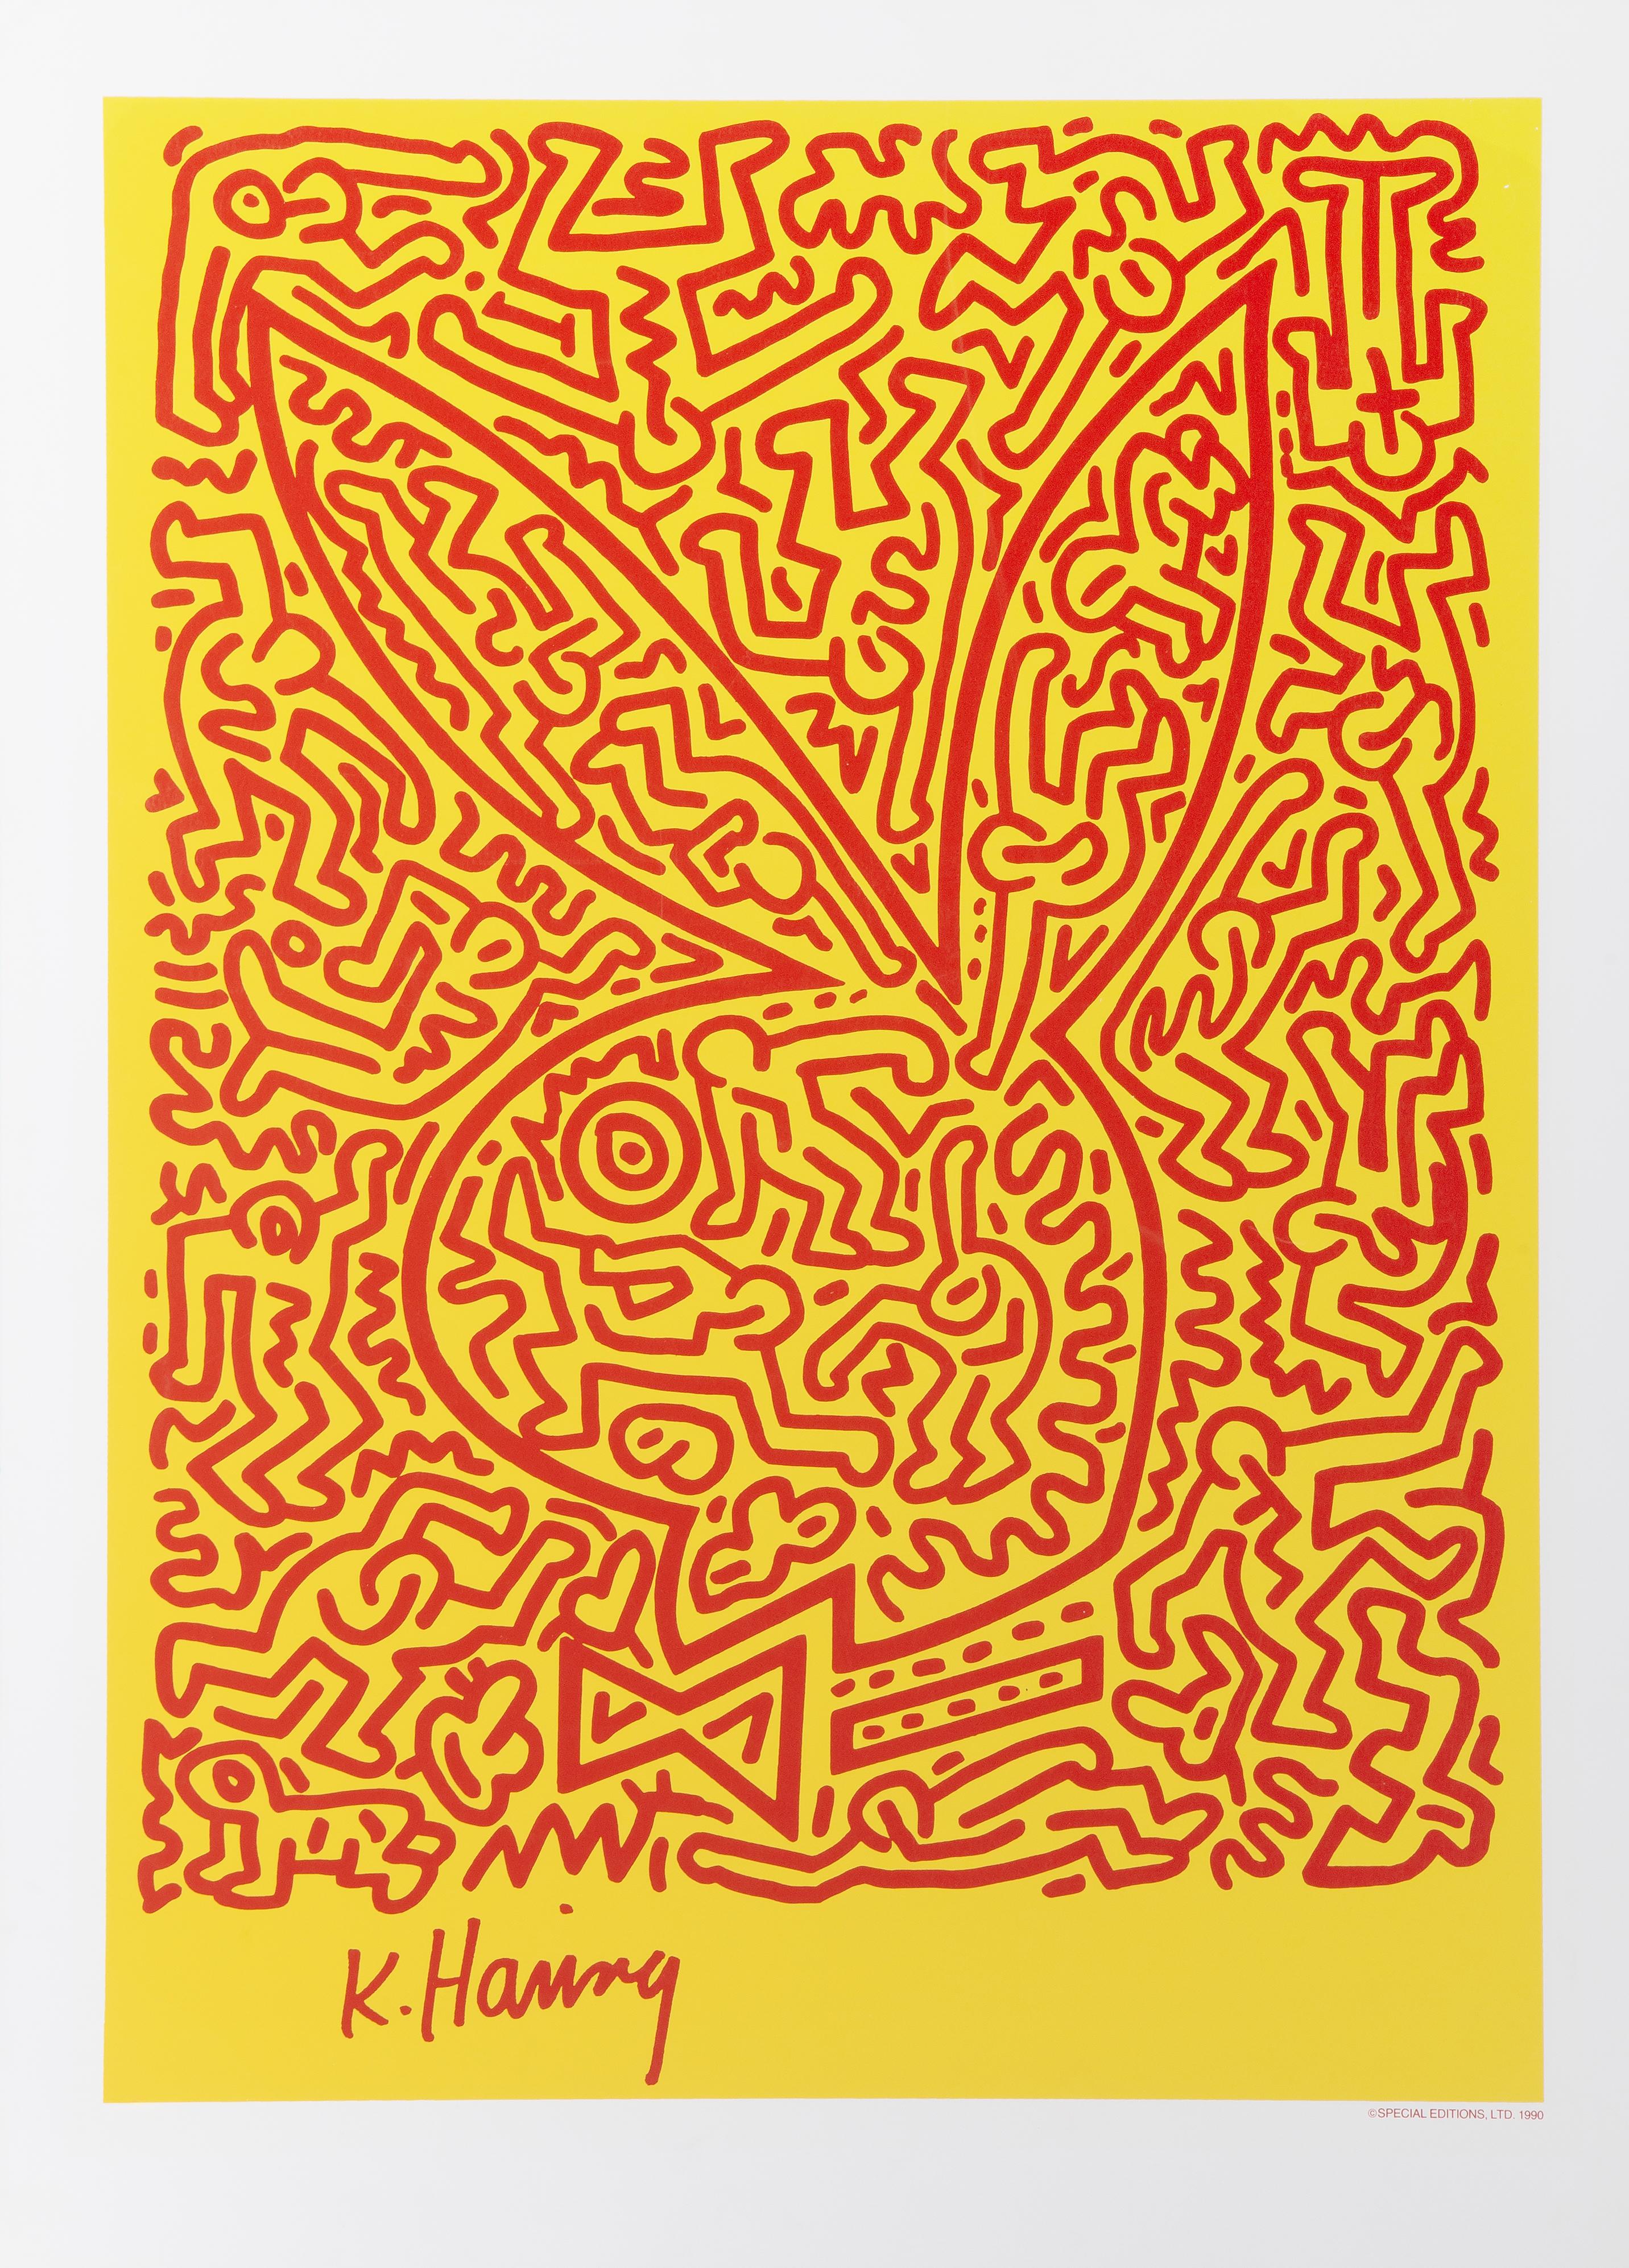 Un póster serigrafiado de edición limitada que Keith Haring diseñó para Playboy. Esta edición limitada de 1000 ejemplares fue publicada en 1990 por Special Editions Ltd. La firma y la fecha "K. Haring" en la impresión. El tamaño de la hoja es de 32